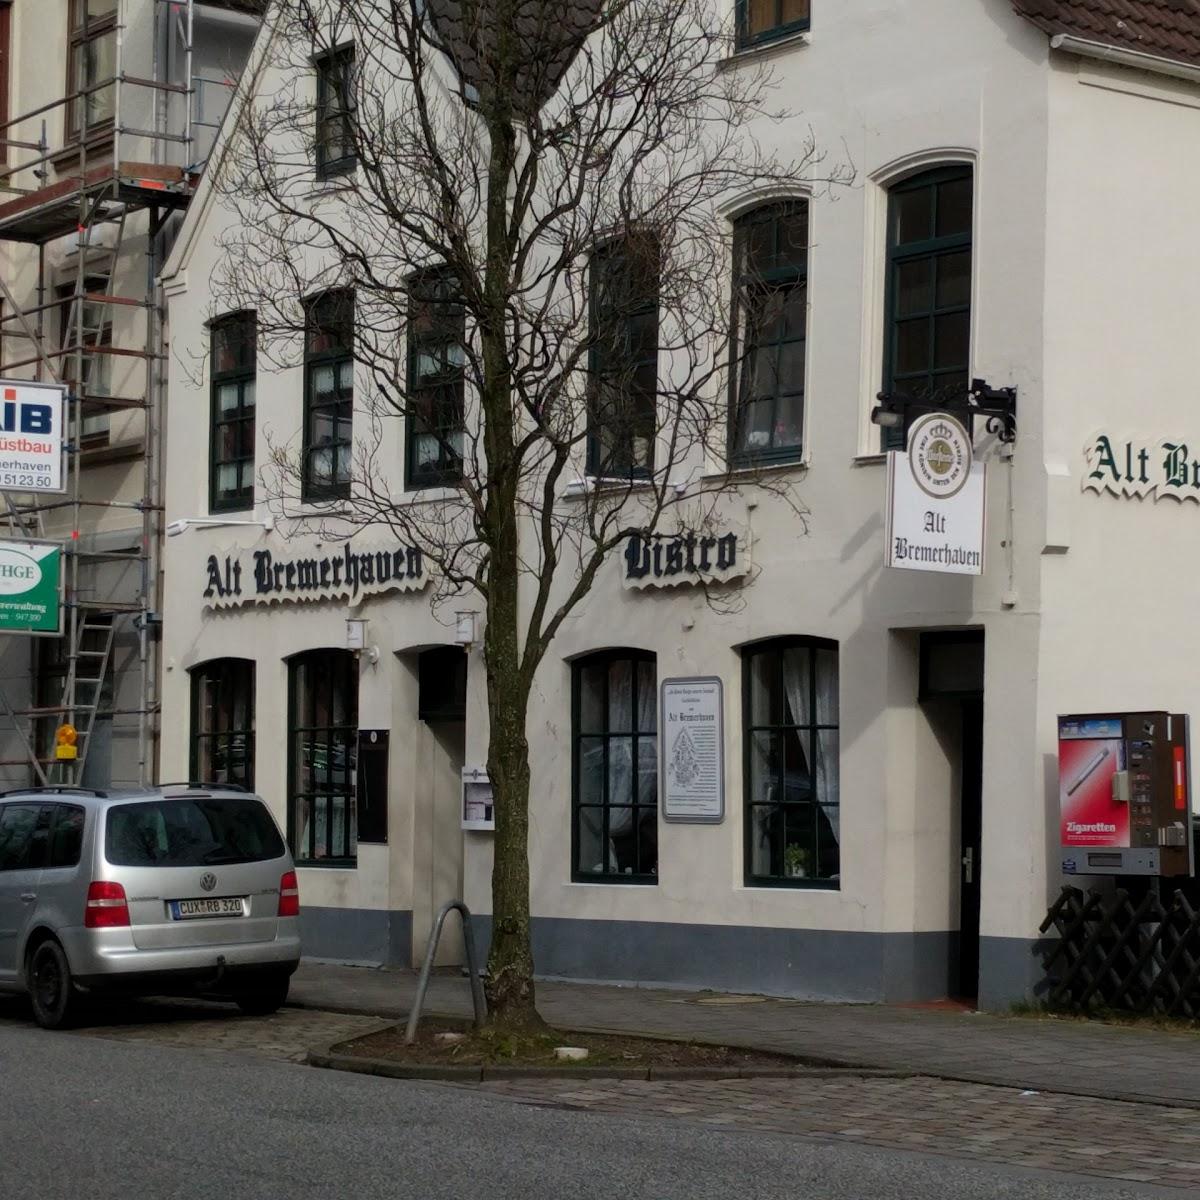 Restaurant "Alt" in Bremerhaven